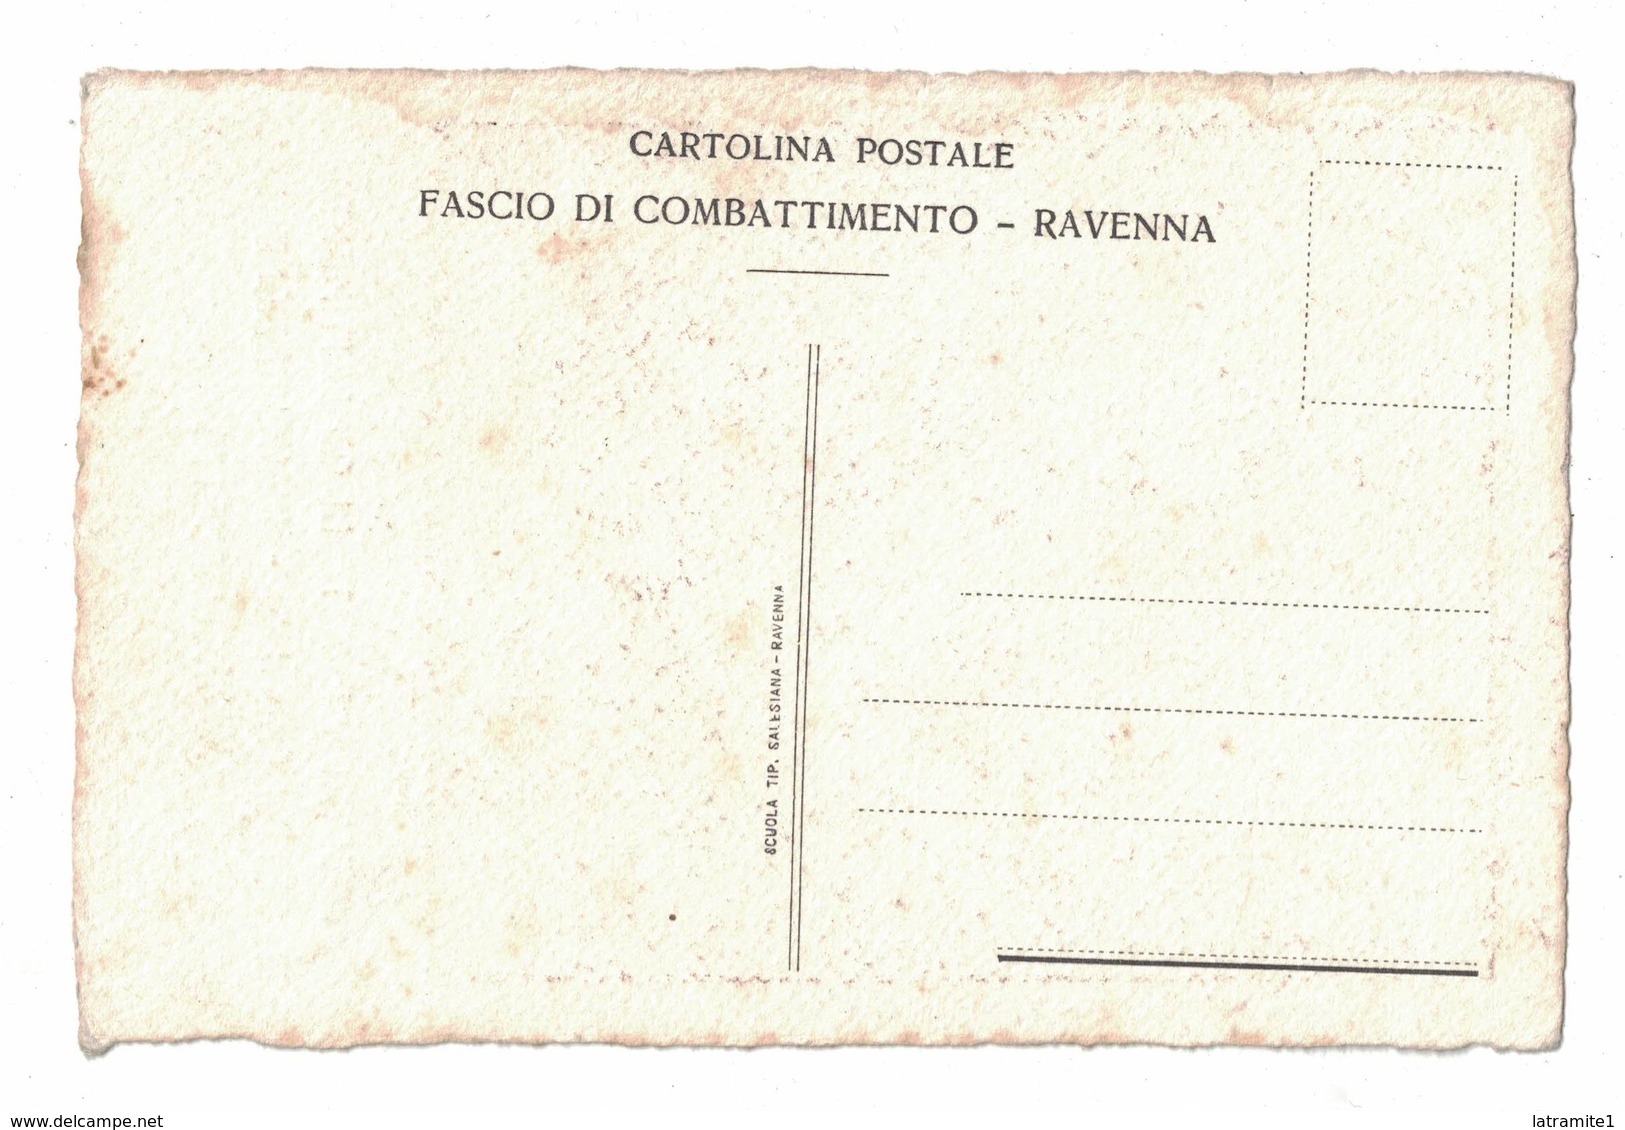 CARTOLINA  CARTE POSTALE  INAUGURAZIONE DEL GAGLIARDETTO FASCIO RAVENNATE DI COMBATTIMENTO  1921 - Pubblicitari